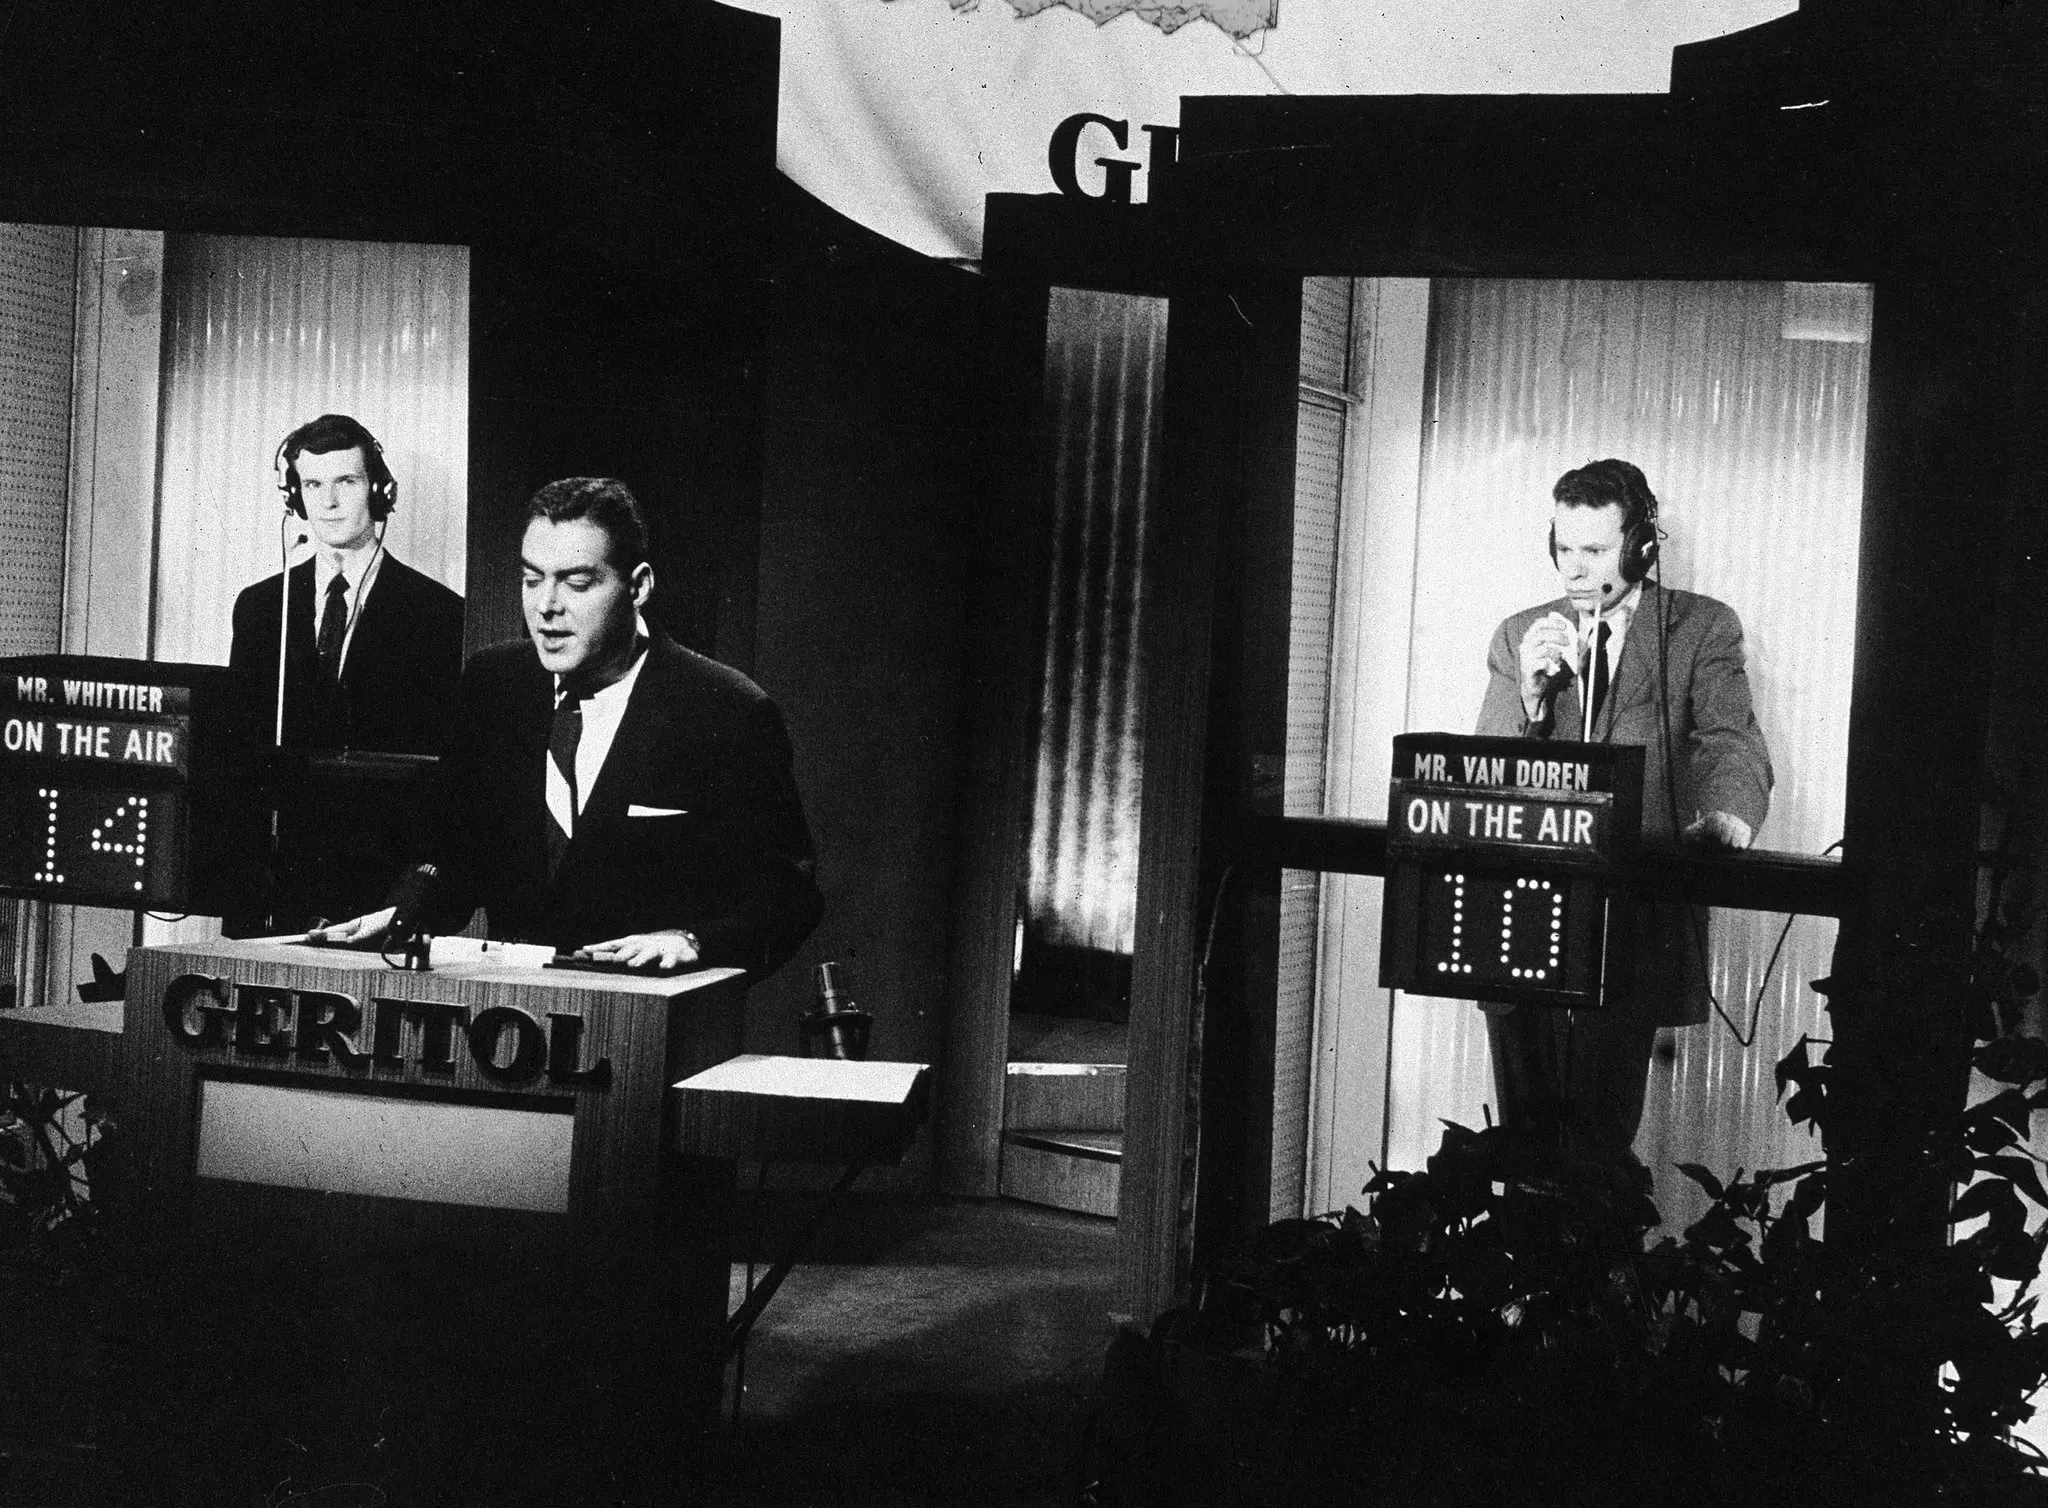 Charles Van Doren, à direita, no estande de um concorrente durante sua série de aparições em 1956 e 1957 no programa de perguntas e respostas “Twenty-One”. O anfitrião, no centro, era Jack Barry. O outro competidor foi Anthony Whittier. Mais tarde, Van Doren confessou ao Congresso que recebeu as respostas às perguntas. (Crédito da fotografia: Televisão NBC, via Getty Images)